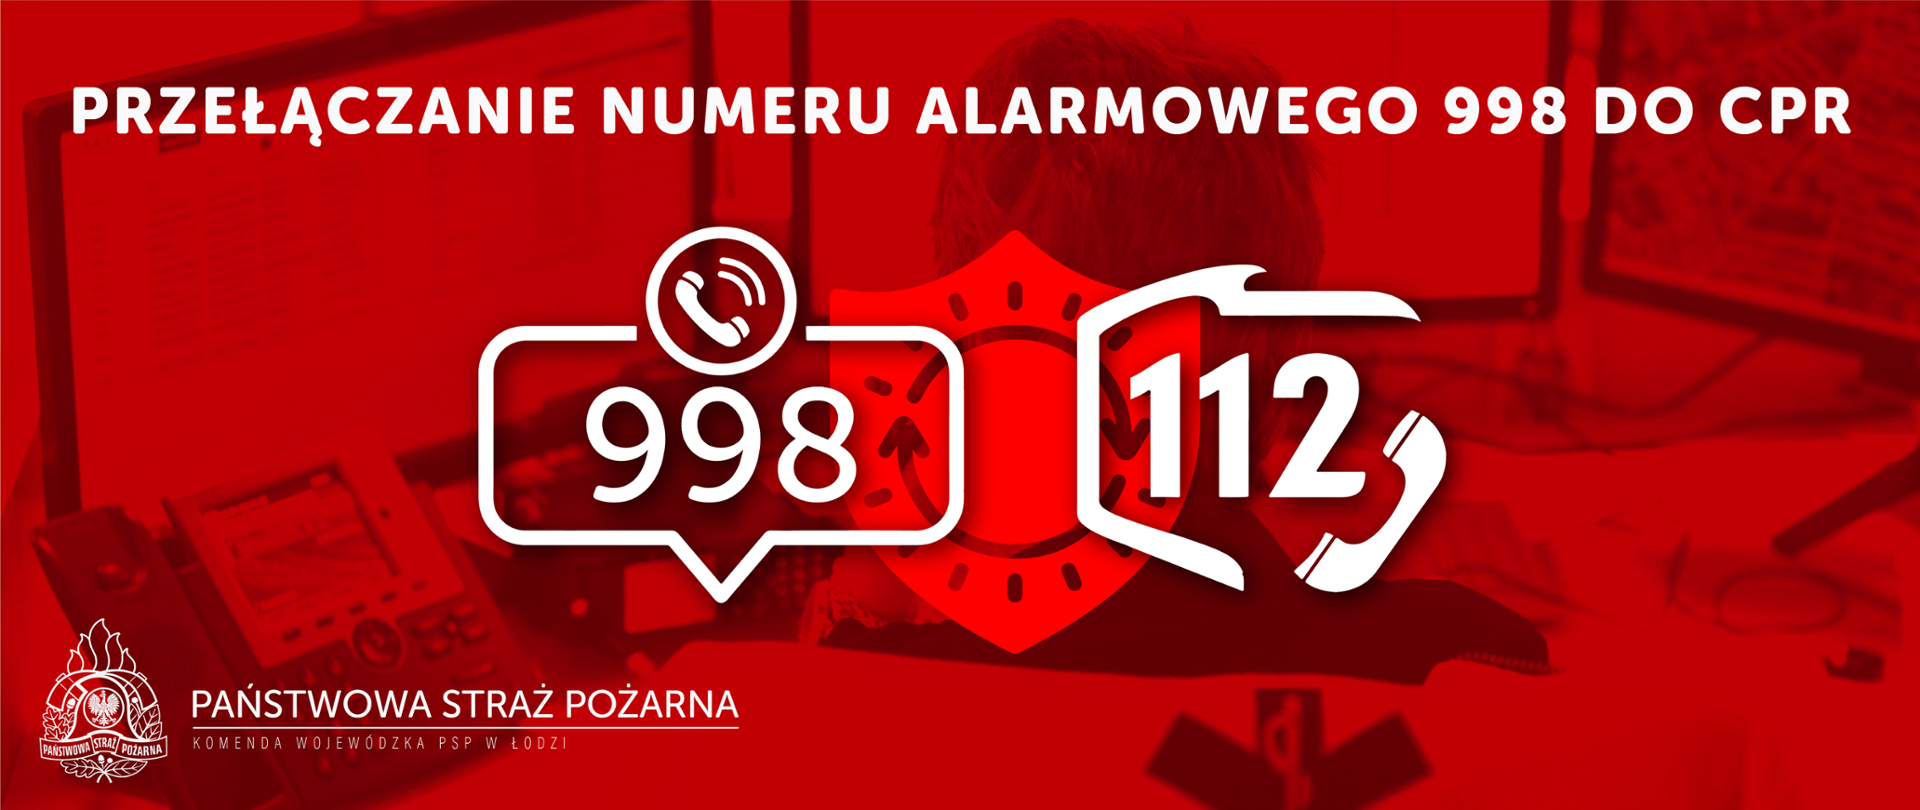 Plakat czerwony z białymi napisami informującymi o przełączaniu numeru alarmowego 998 do CPR